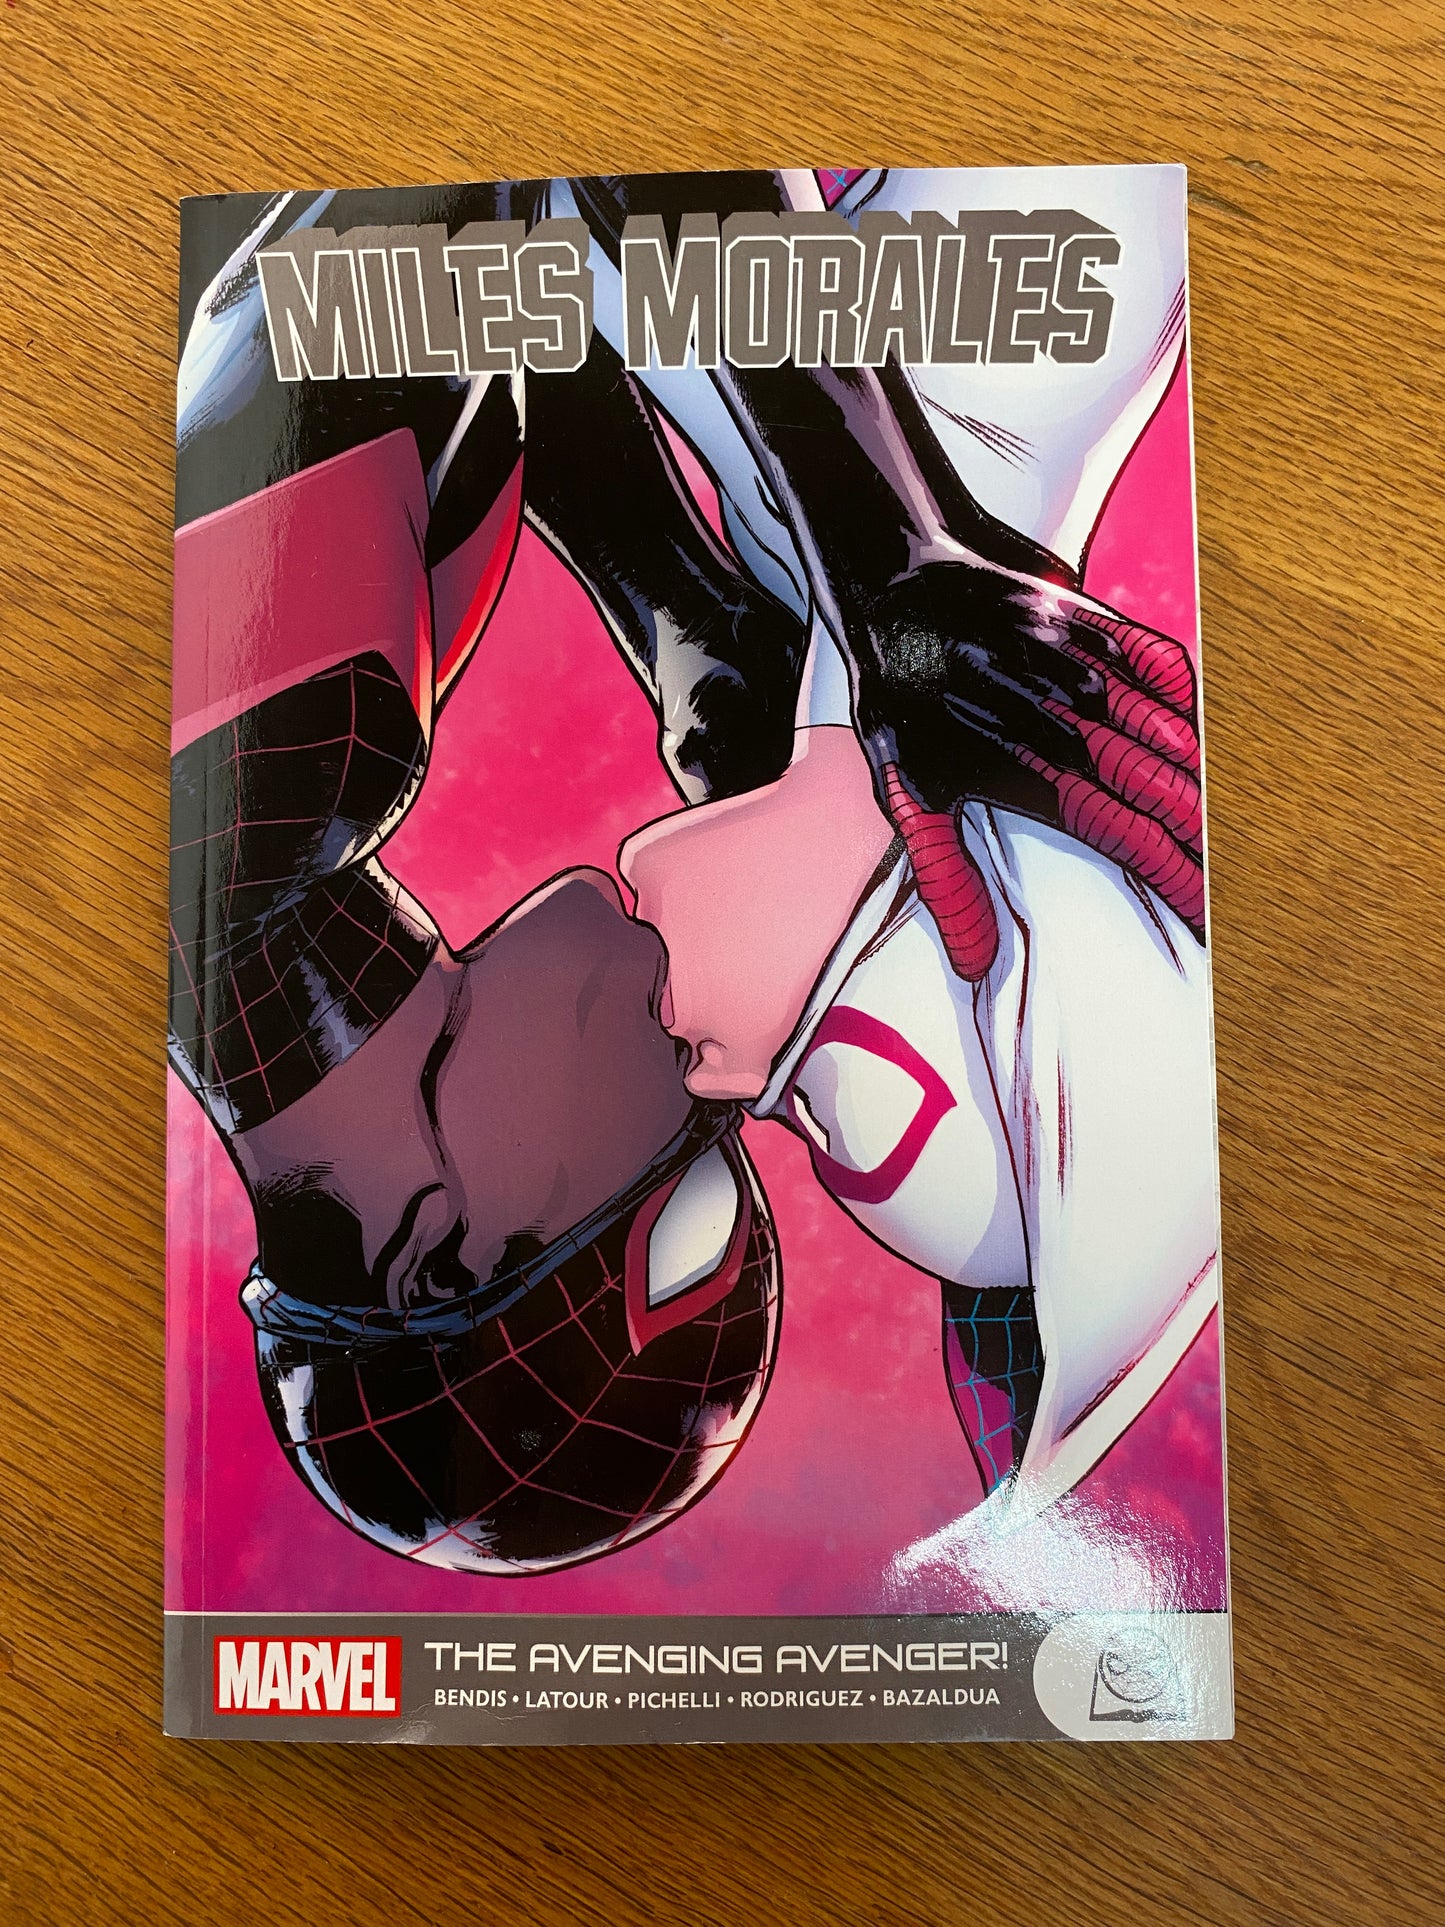 Miles Morales: the Avenging Avenger!